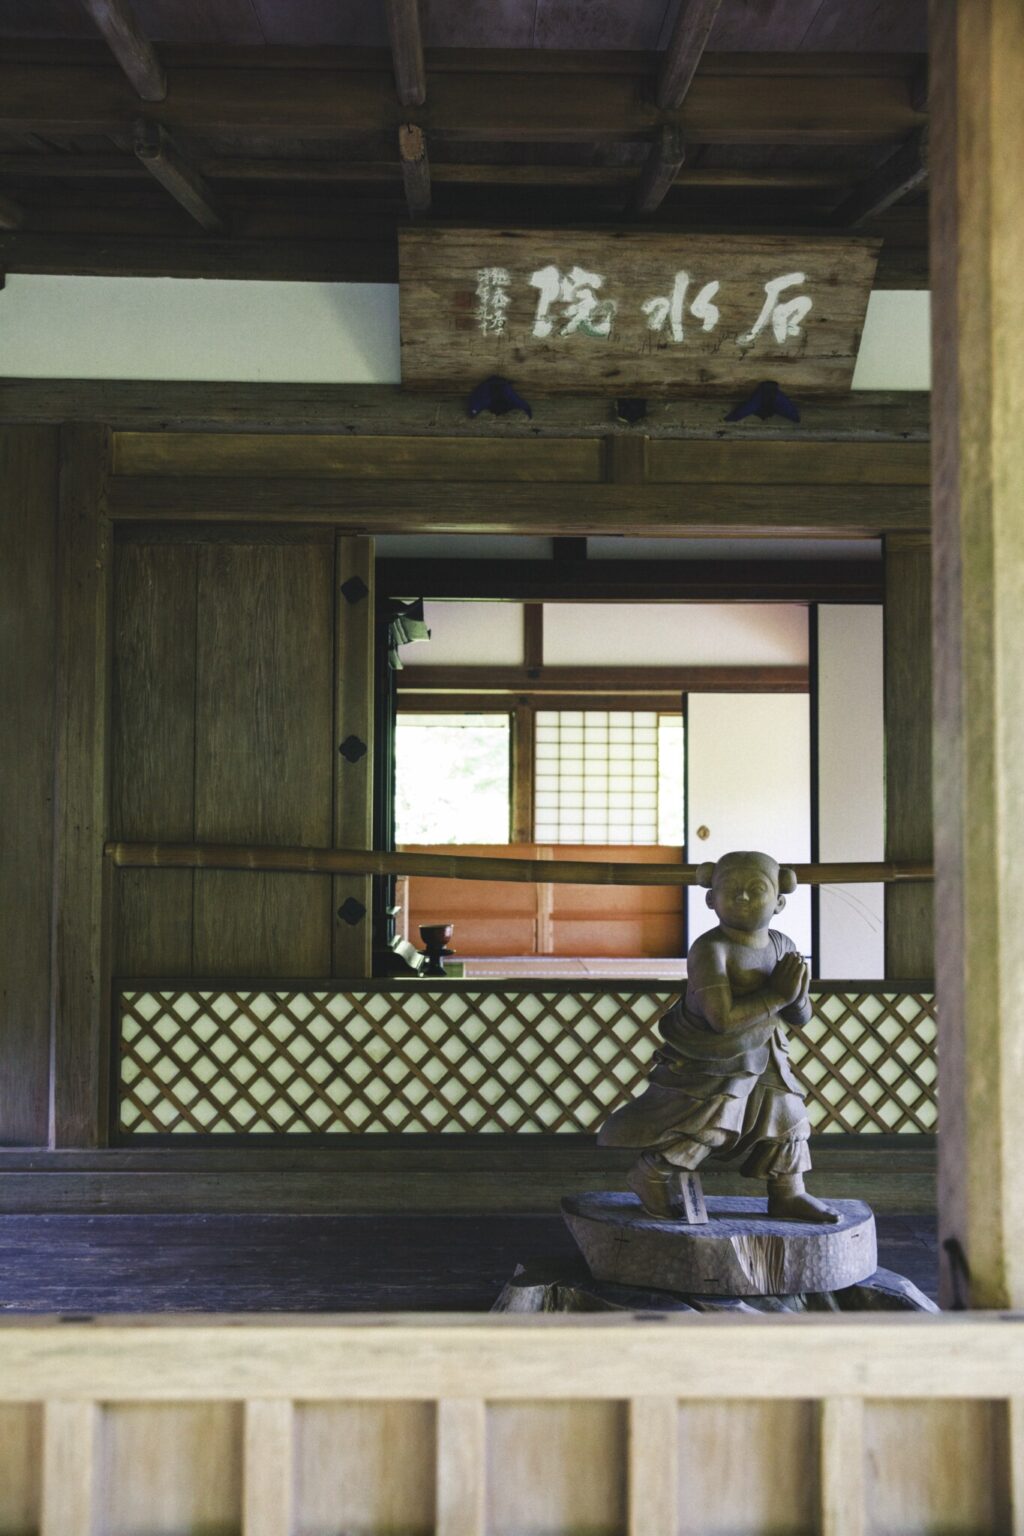 鎌倉時代から残る石水院は、明恵上人が後鳥羽上皇より賜った学問所で国宝に指定。庇の間には善財童子の姿。